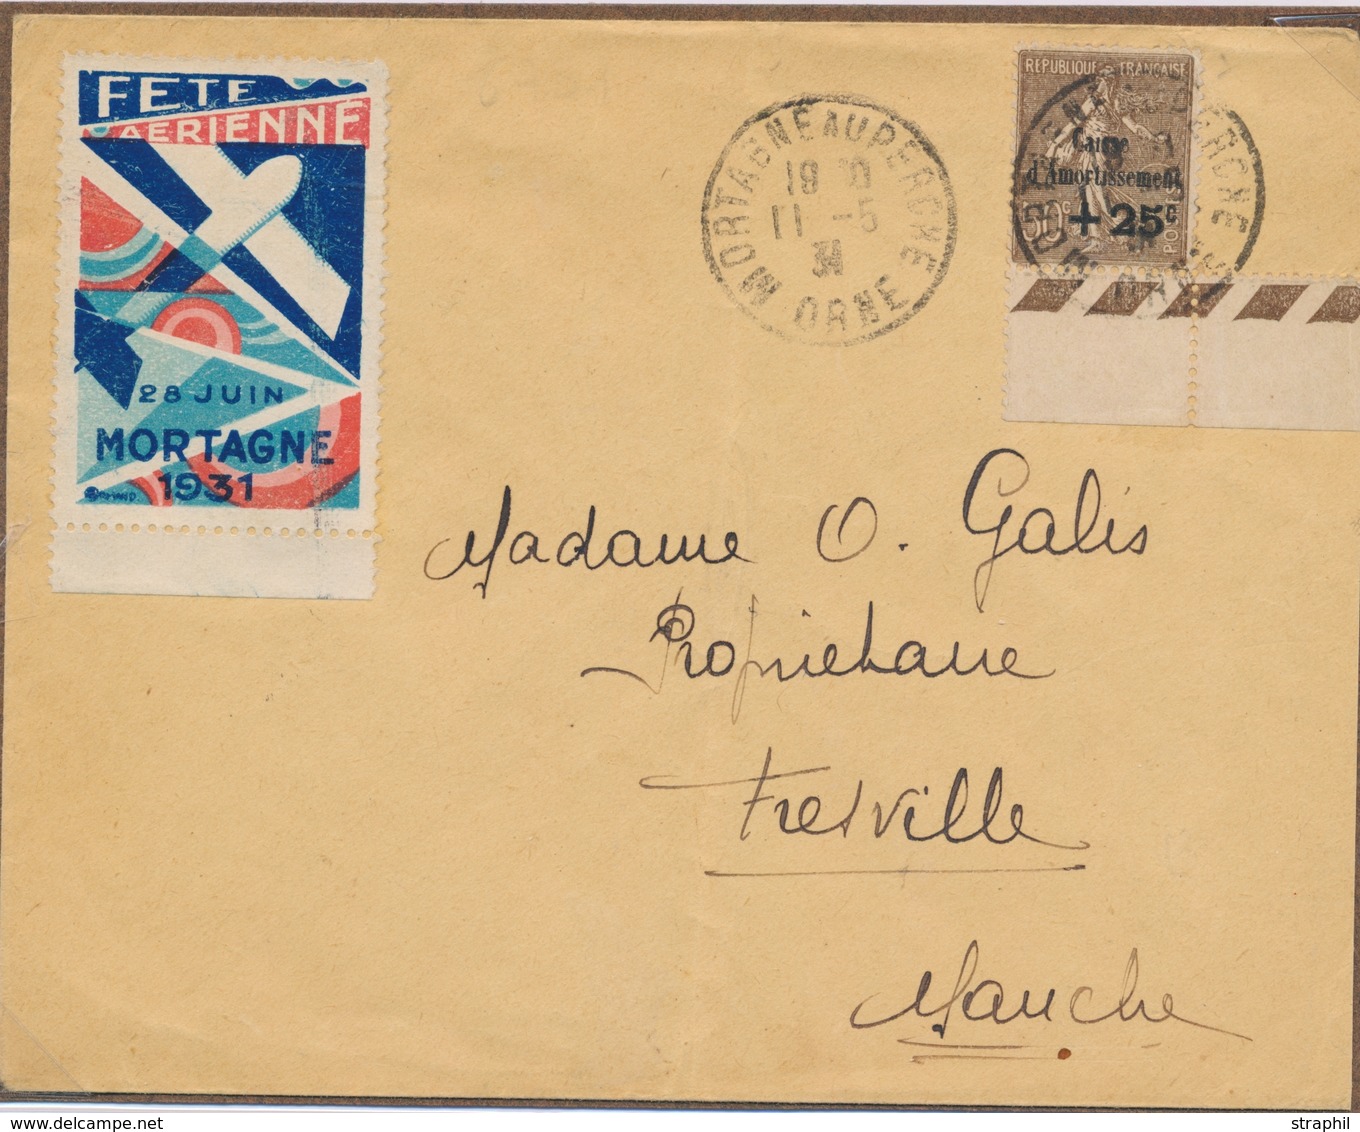 L CA Sur Lettre - L - N°267 - Obl Mortagne Au Perche - 11/5/31 + Vignette "Fête Aérienne à Mortagne" Du 28 Juin 1931 - T - Covers & Documents